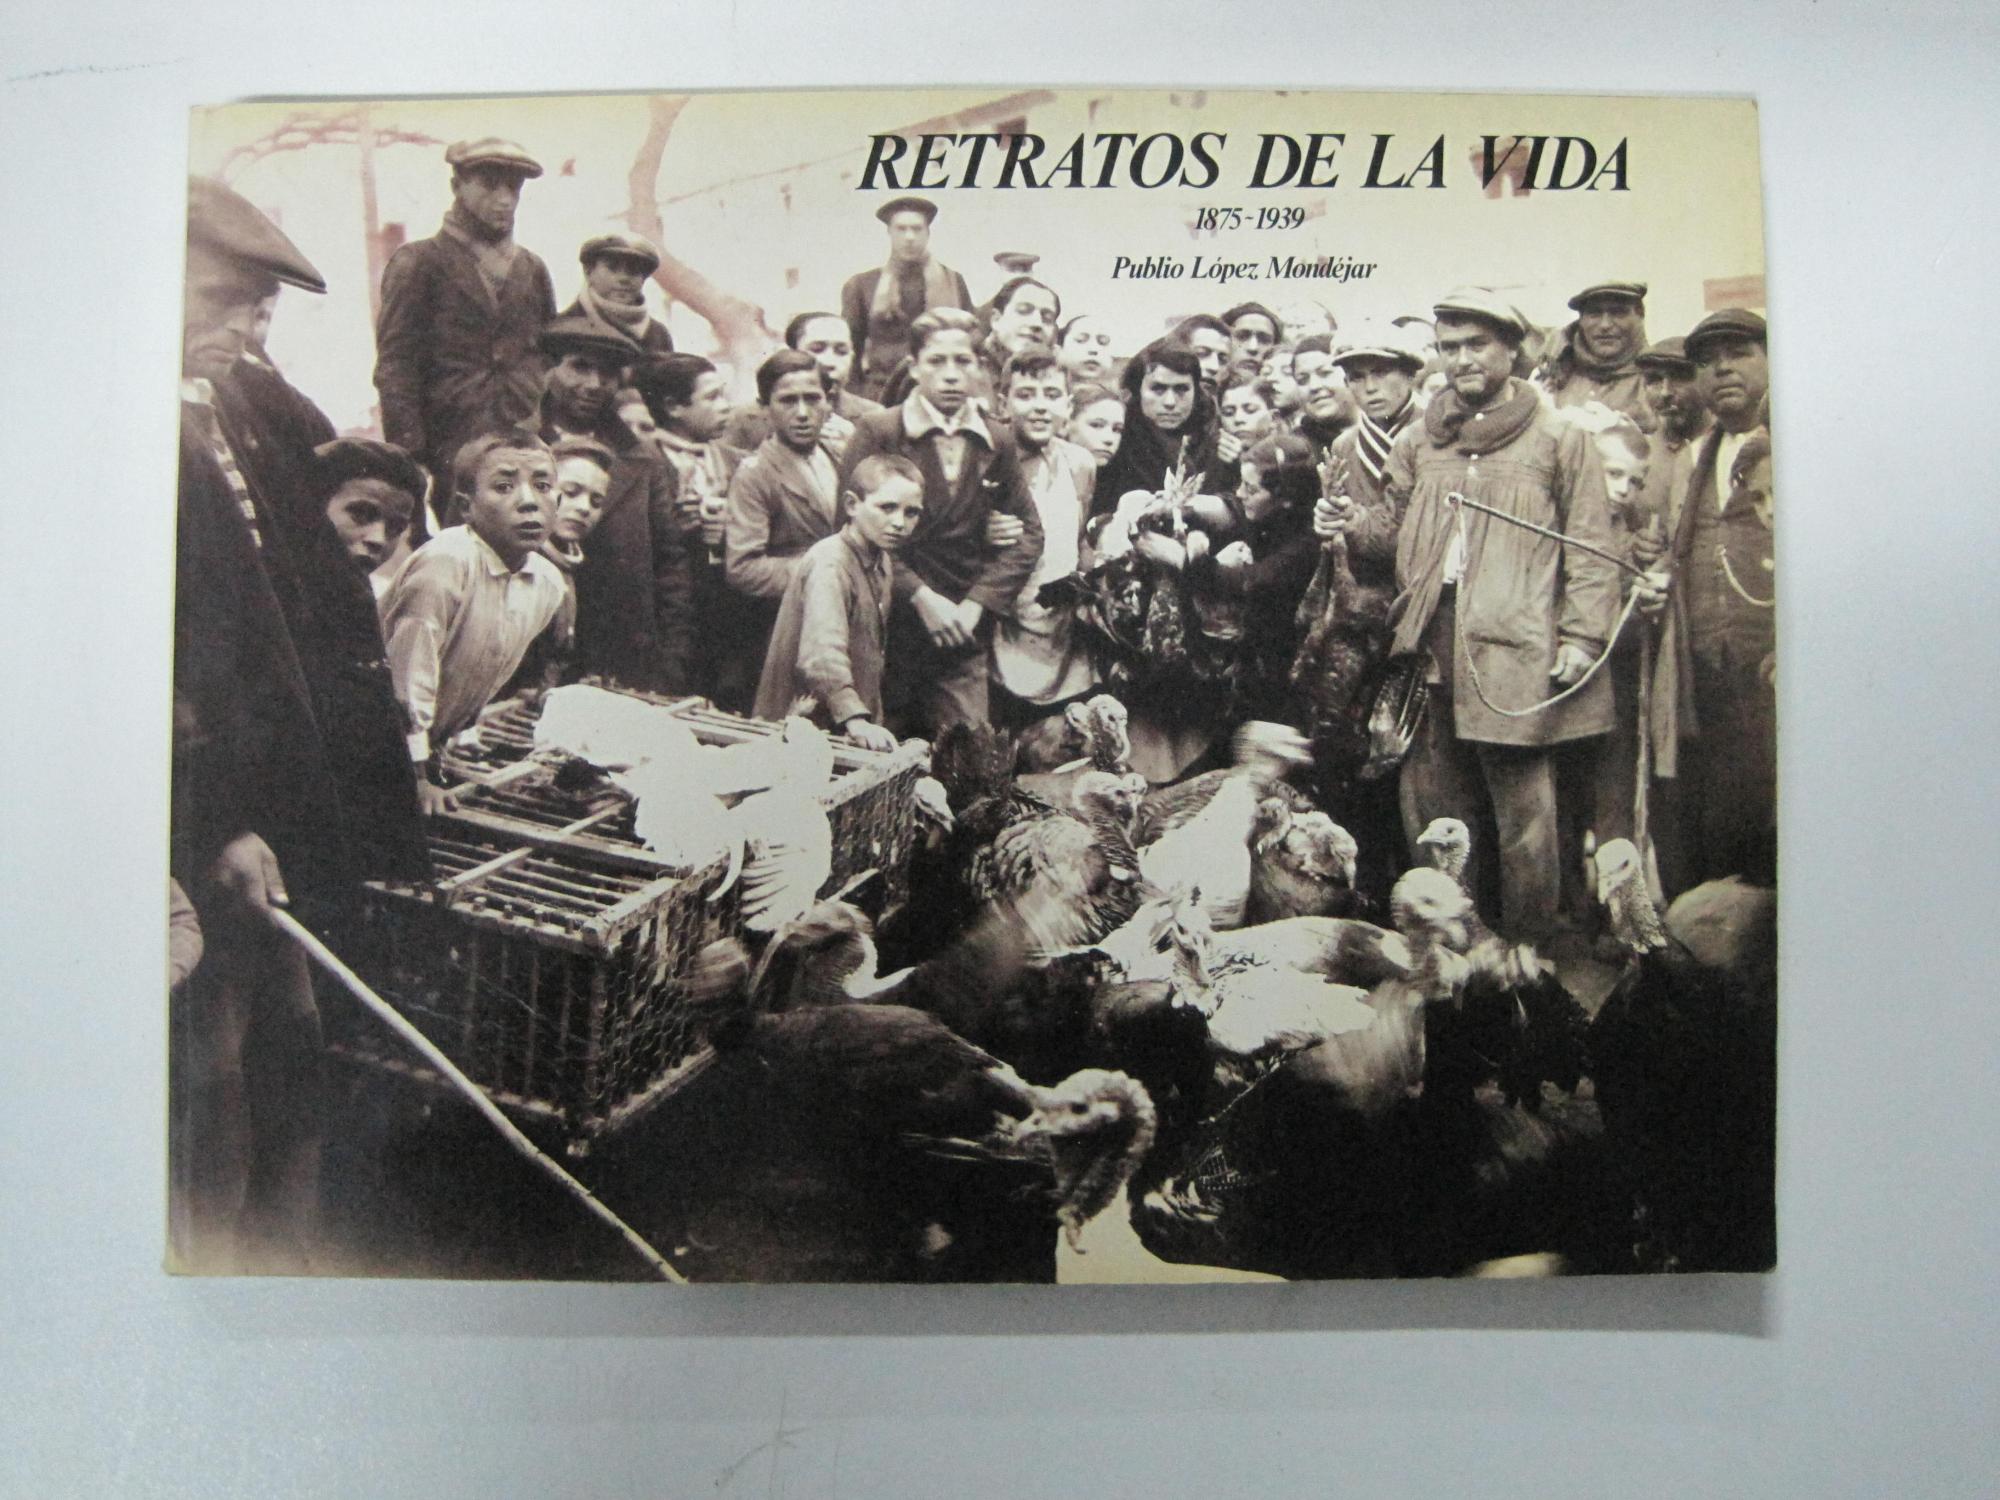 Retratos de la vida, 1875-1939 - Publio López Mondejar, Luis Escobar